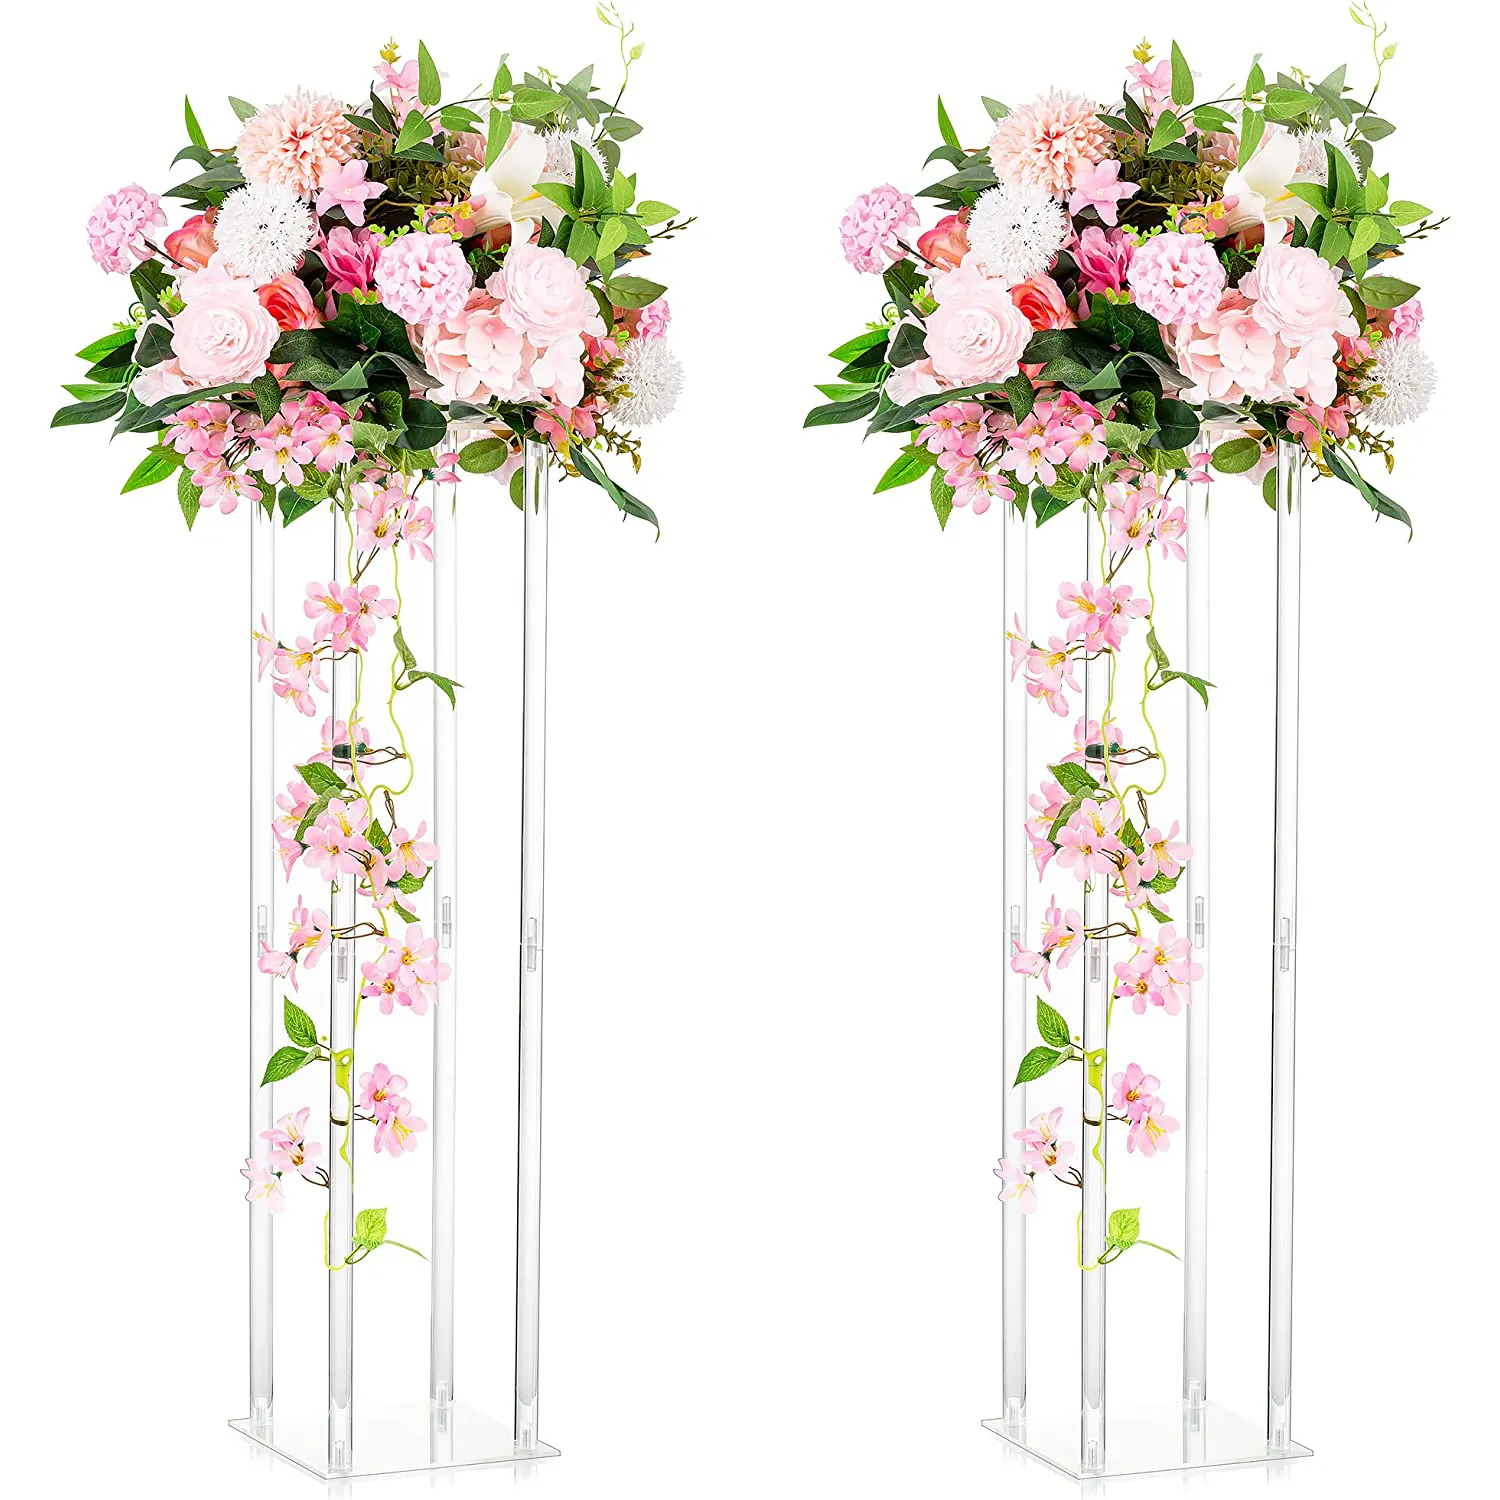 Supporto per fiori in acrilico di cristallo decorazione per matrimonio decorazione per tavolo principale ornamenti per matrimonio in acrilico centrotavola fiore